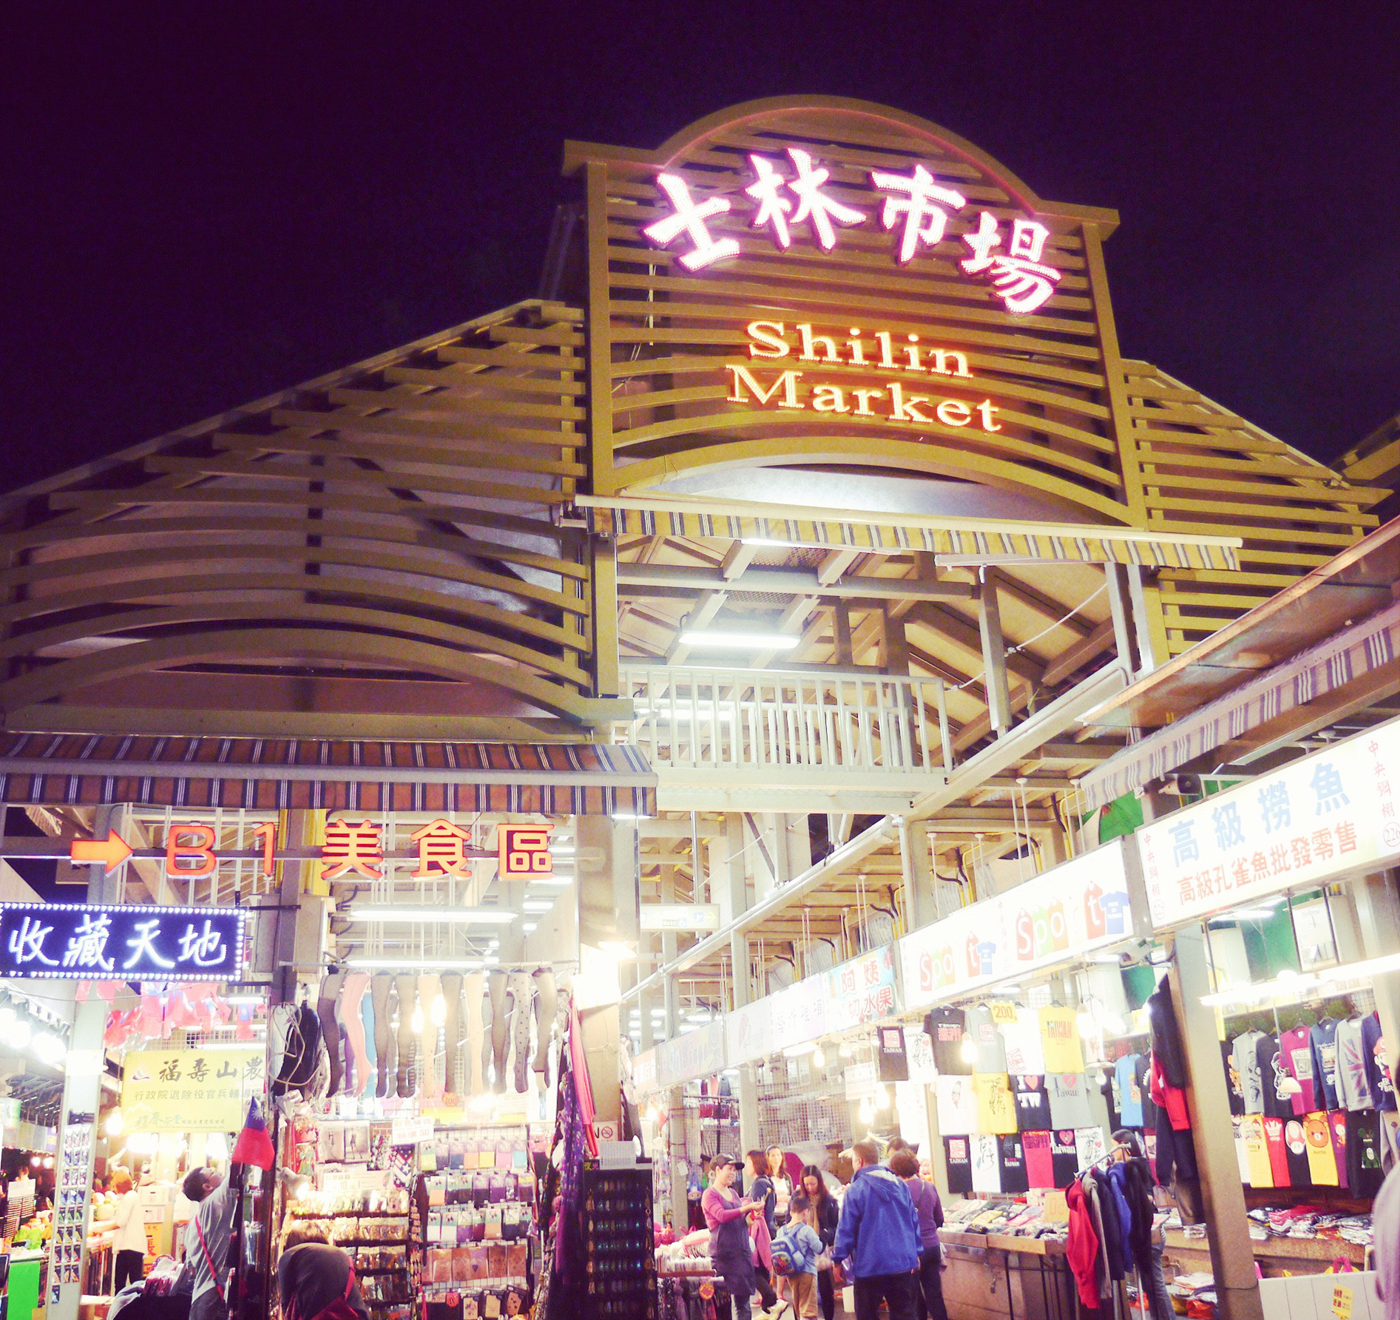 Chợ đêm Shilin, thuộc quận Shilin, gần ga tàu điện ngầm MRTJiantan - là địa chỉ thưởng thức ẩm thực đường phố nổi tiếng. Đây là một trong số những chợ đêm lớn và sầm uất vào bậc nhất ở Taipei. 